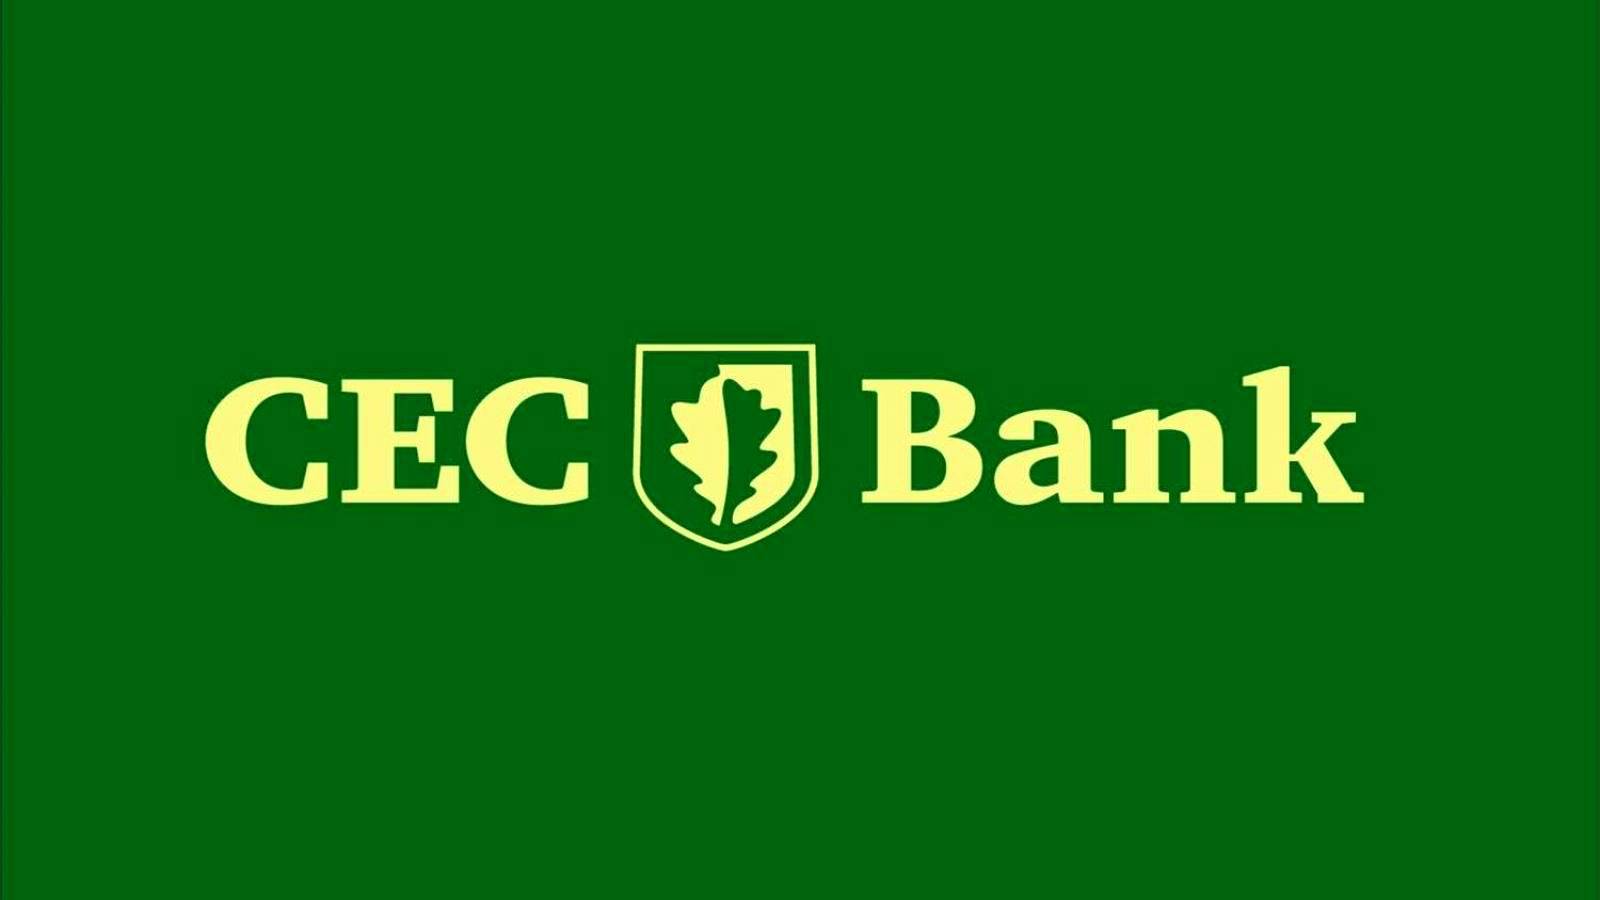 Powiadomienie o głównym działaniu banku CEC zostało oficjalnie potwierdzone dla wszystkich klientów